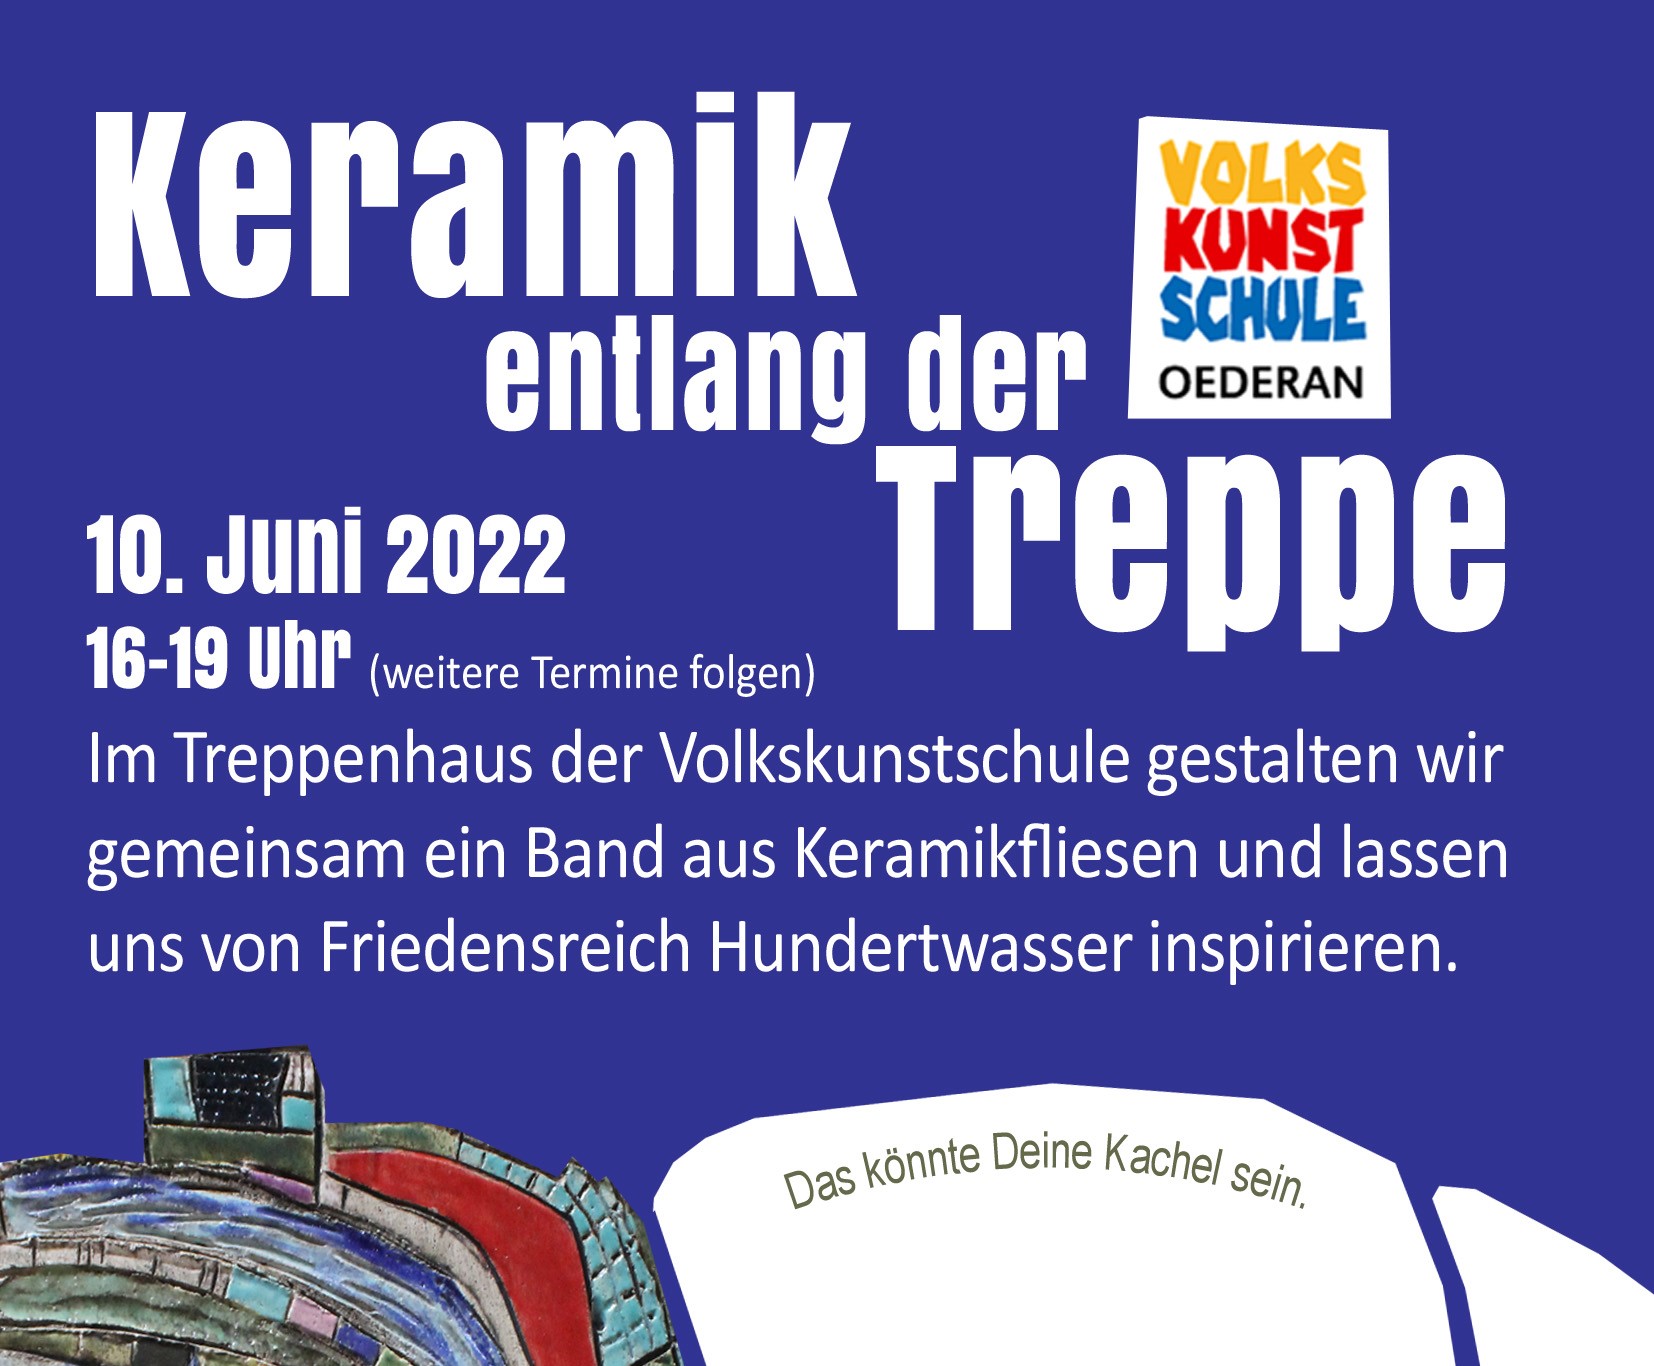 https://www.volkskunstschule.de/public/admin-images/startseite/Keramik_Treppe_2022_2.jpg